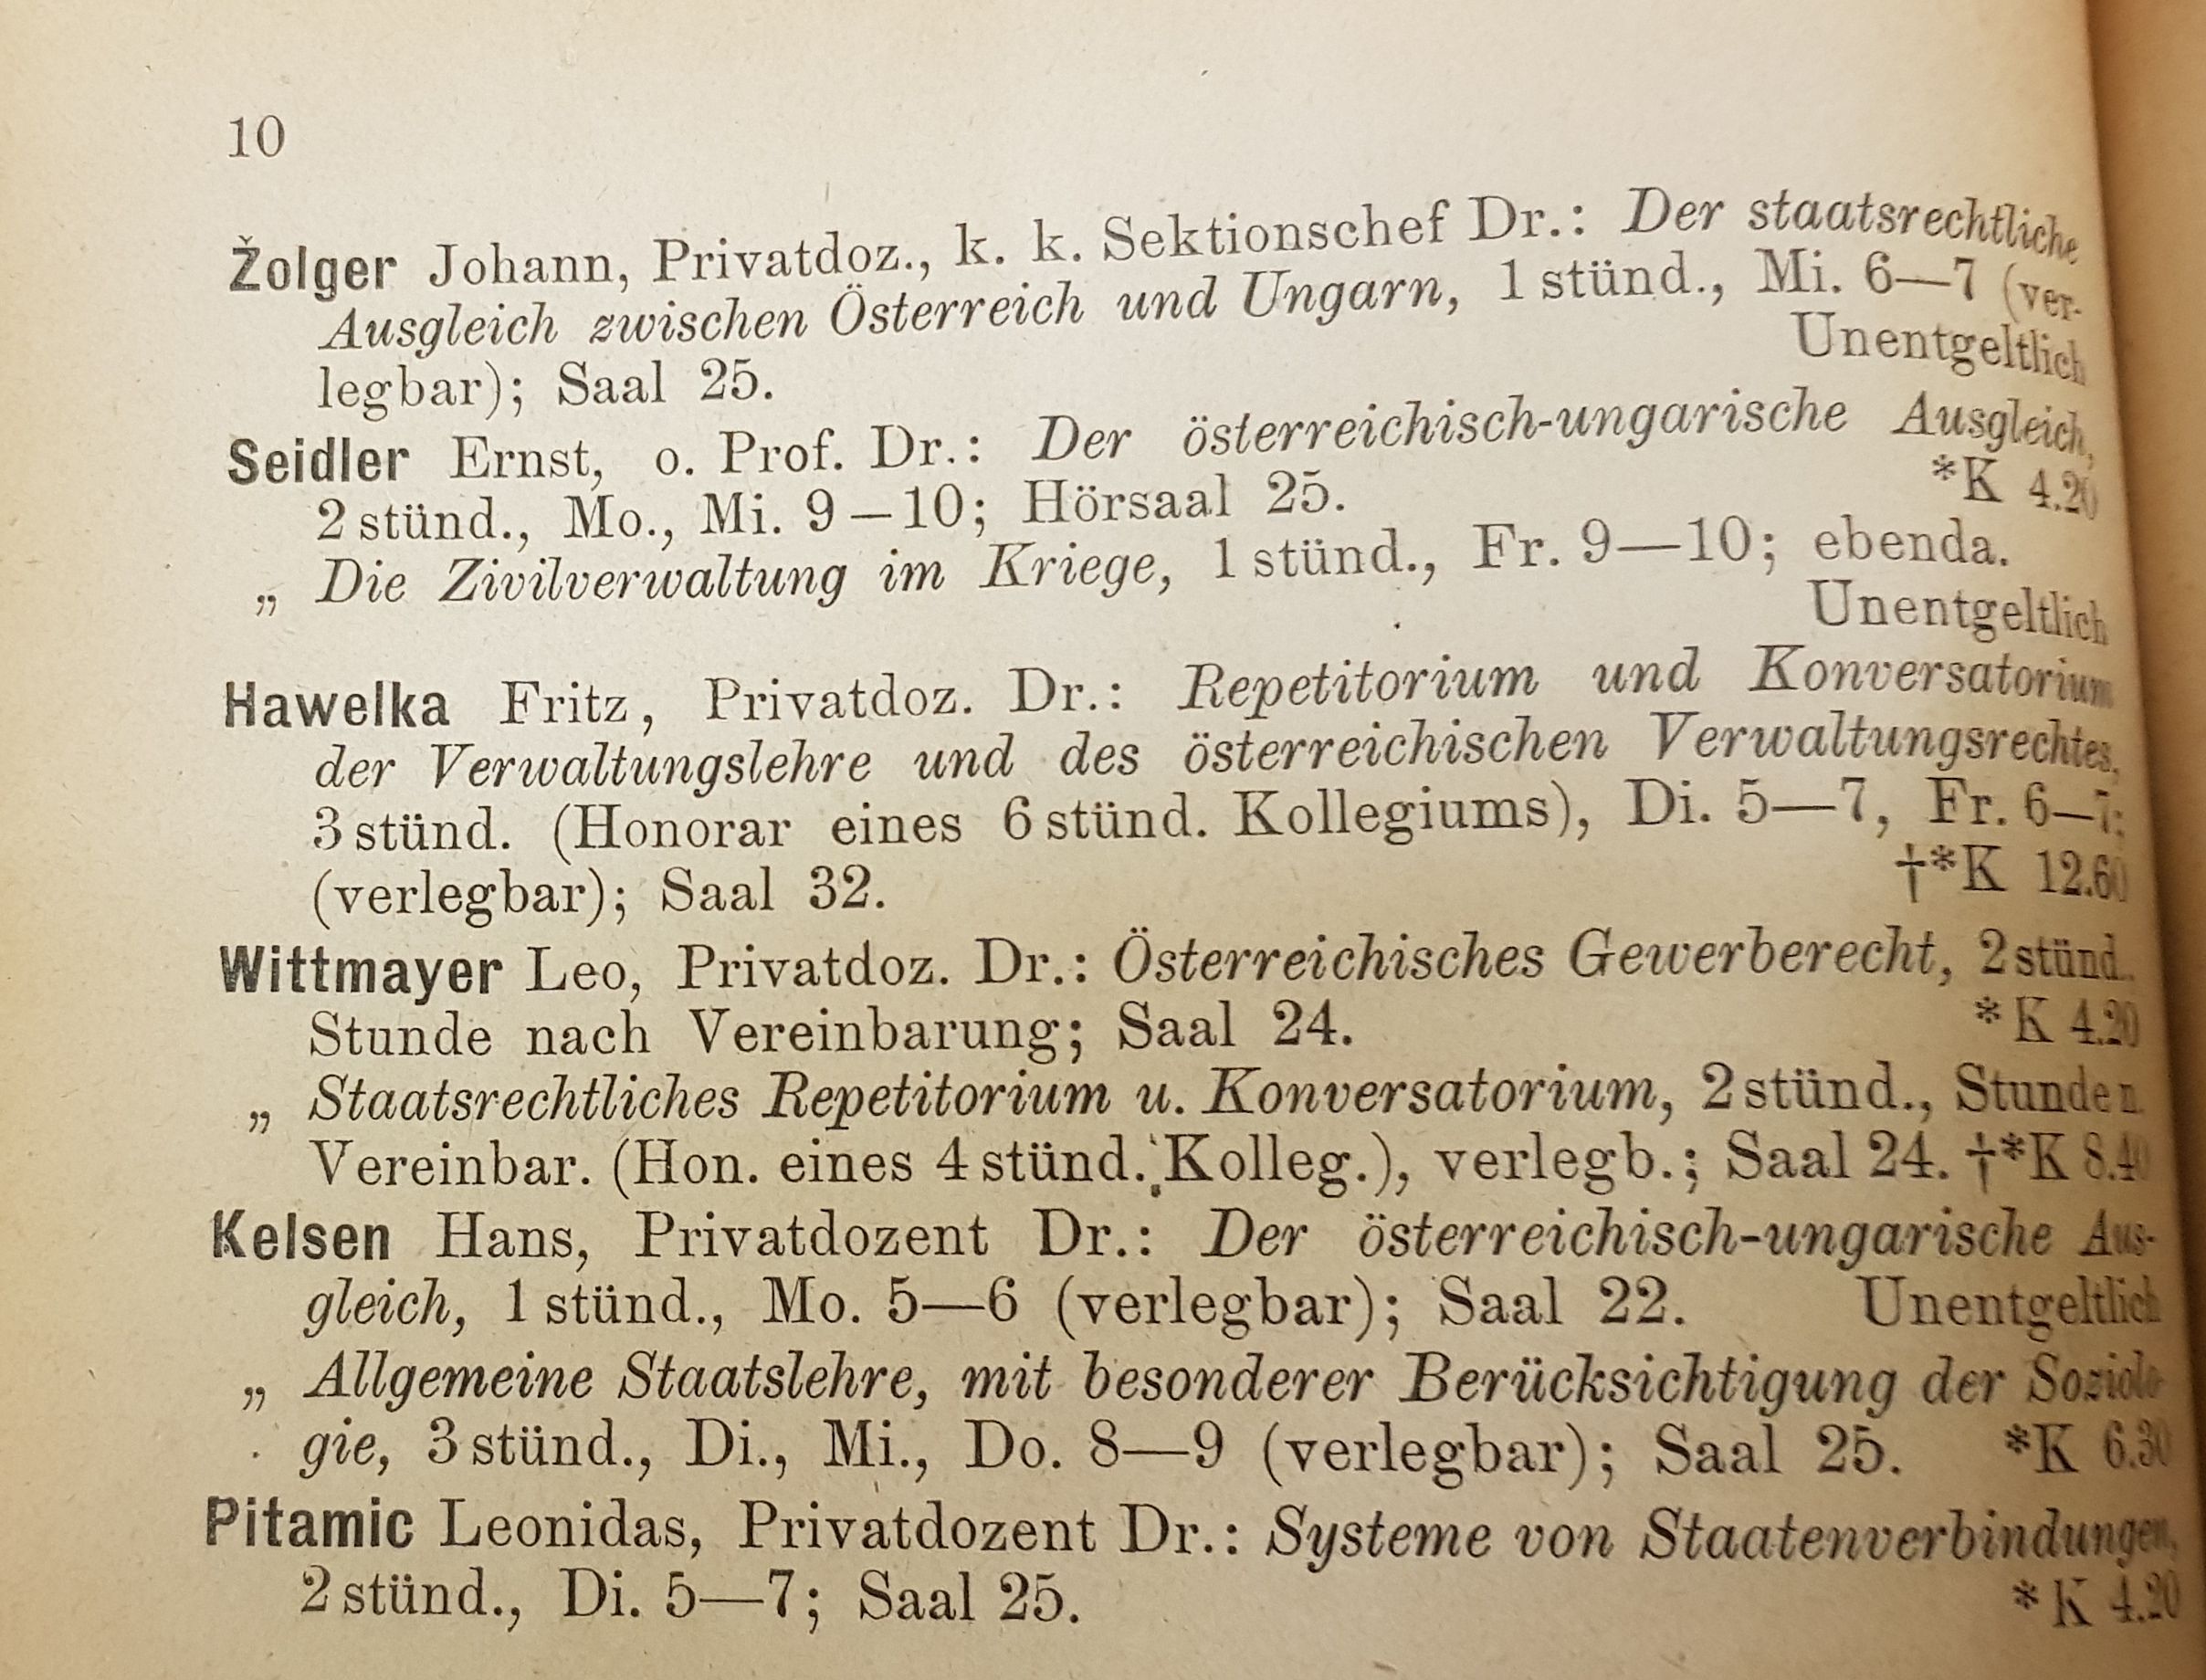 Slika 1: Žolger, Seidler, Kelsen, Pitamic – kolegi profesorji na Dunajski pravni fakulteti; izsek iz študijskega programa, zimski semester 1915/16.